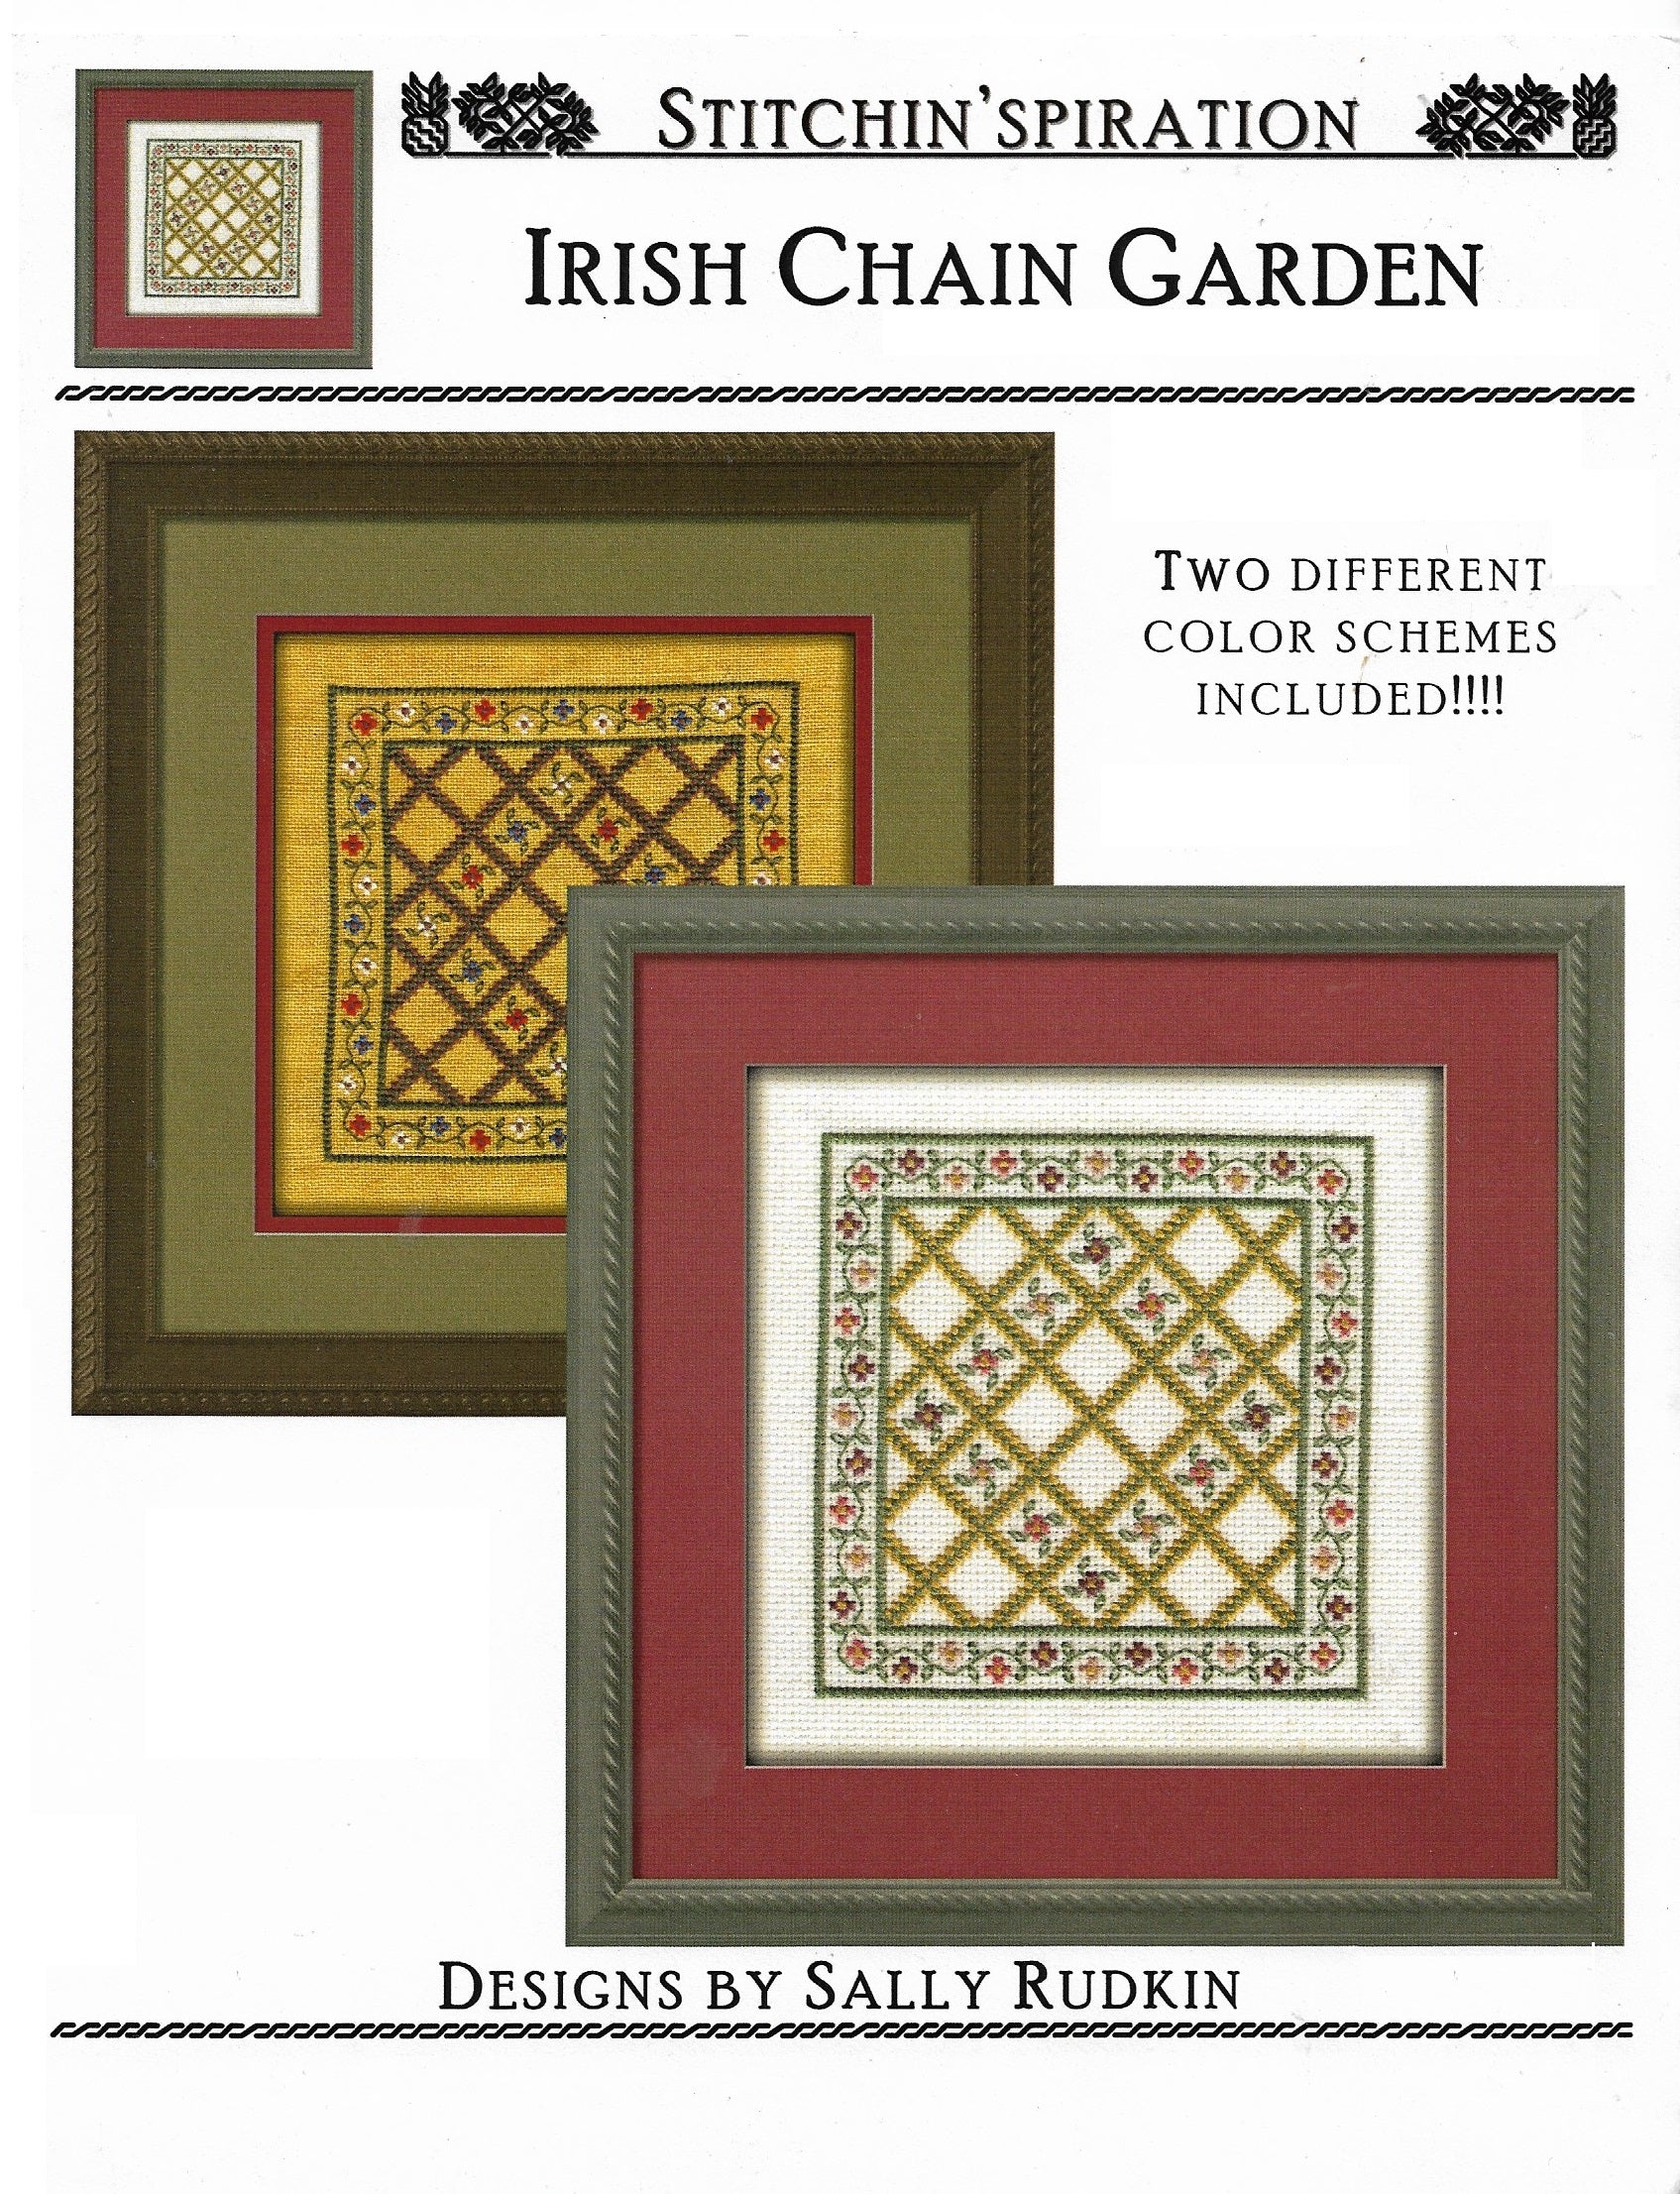 Stitchin'spiration irish chain garden cross stitch pattern